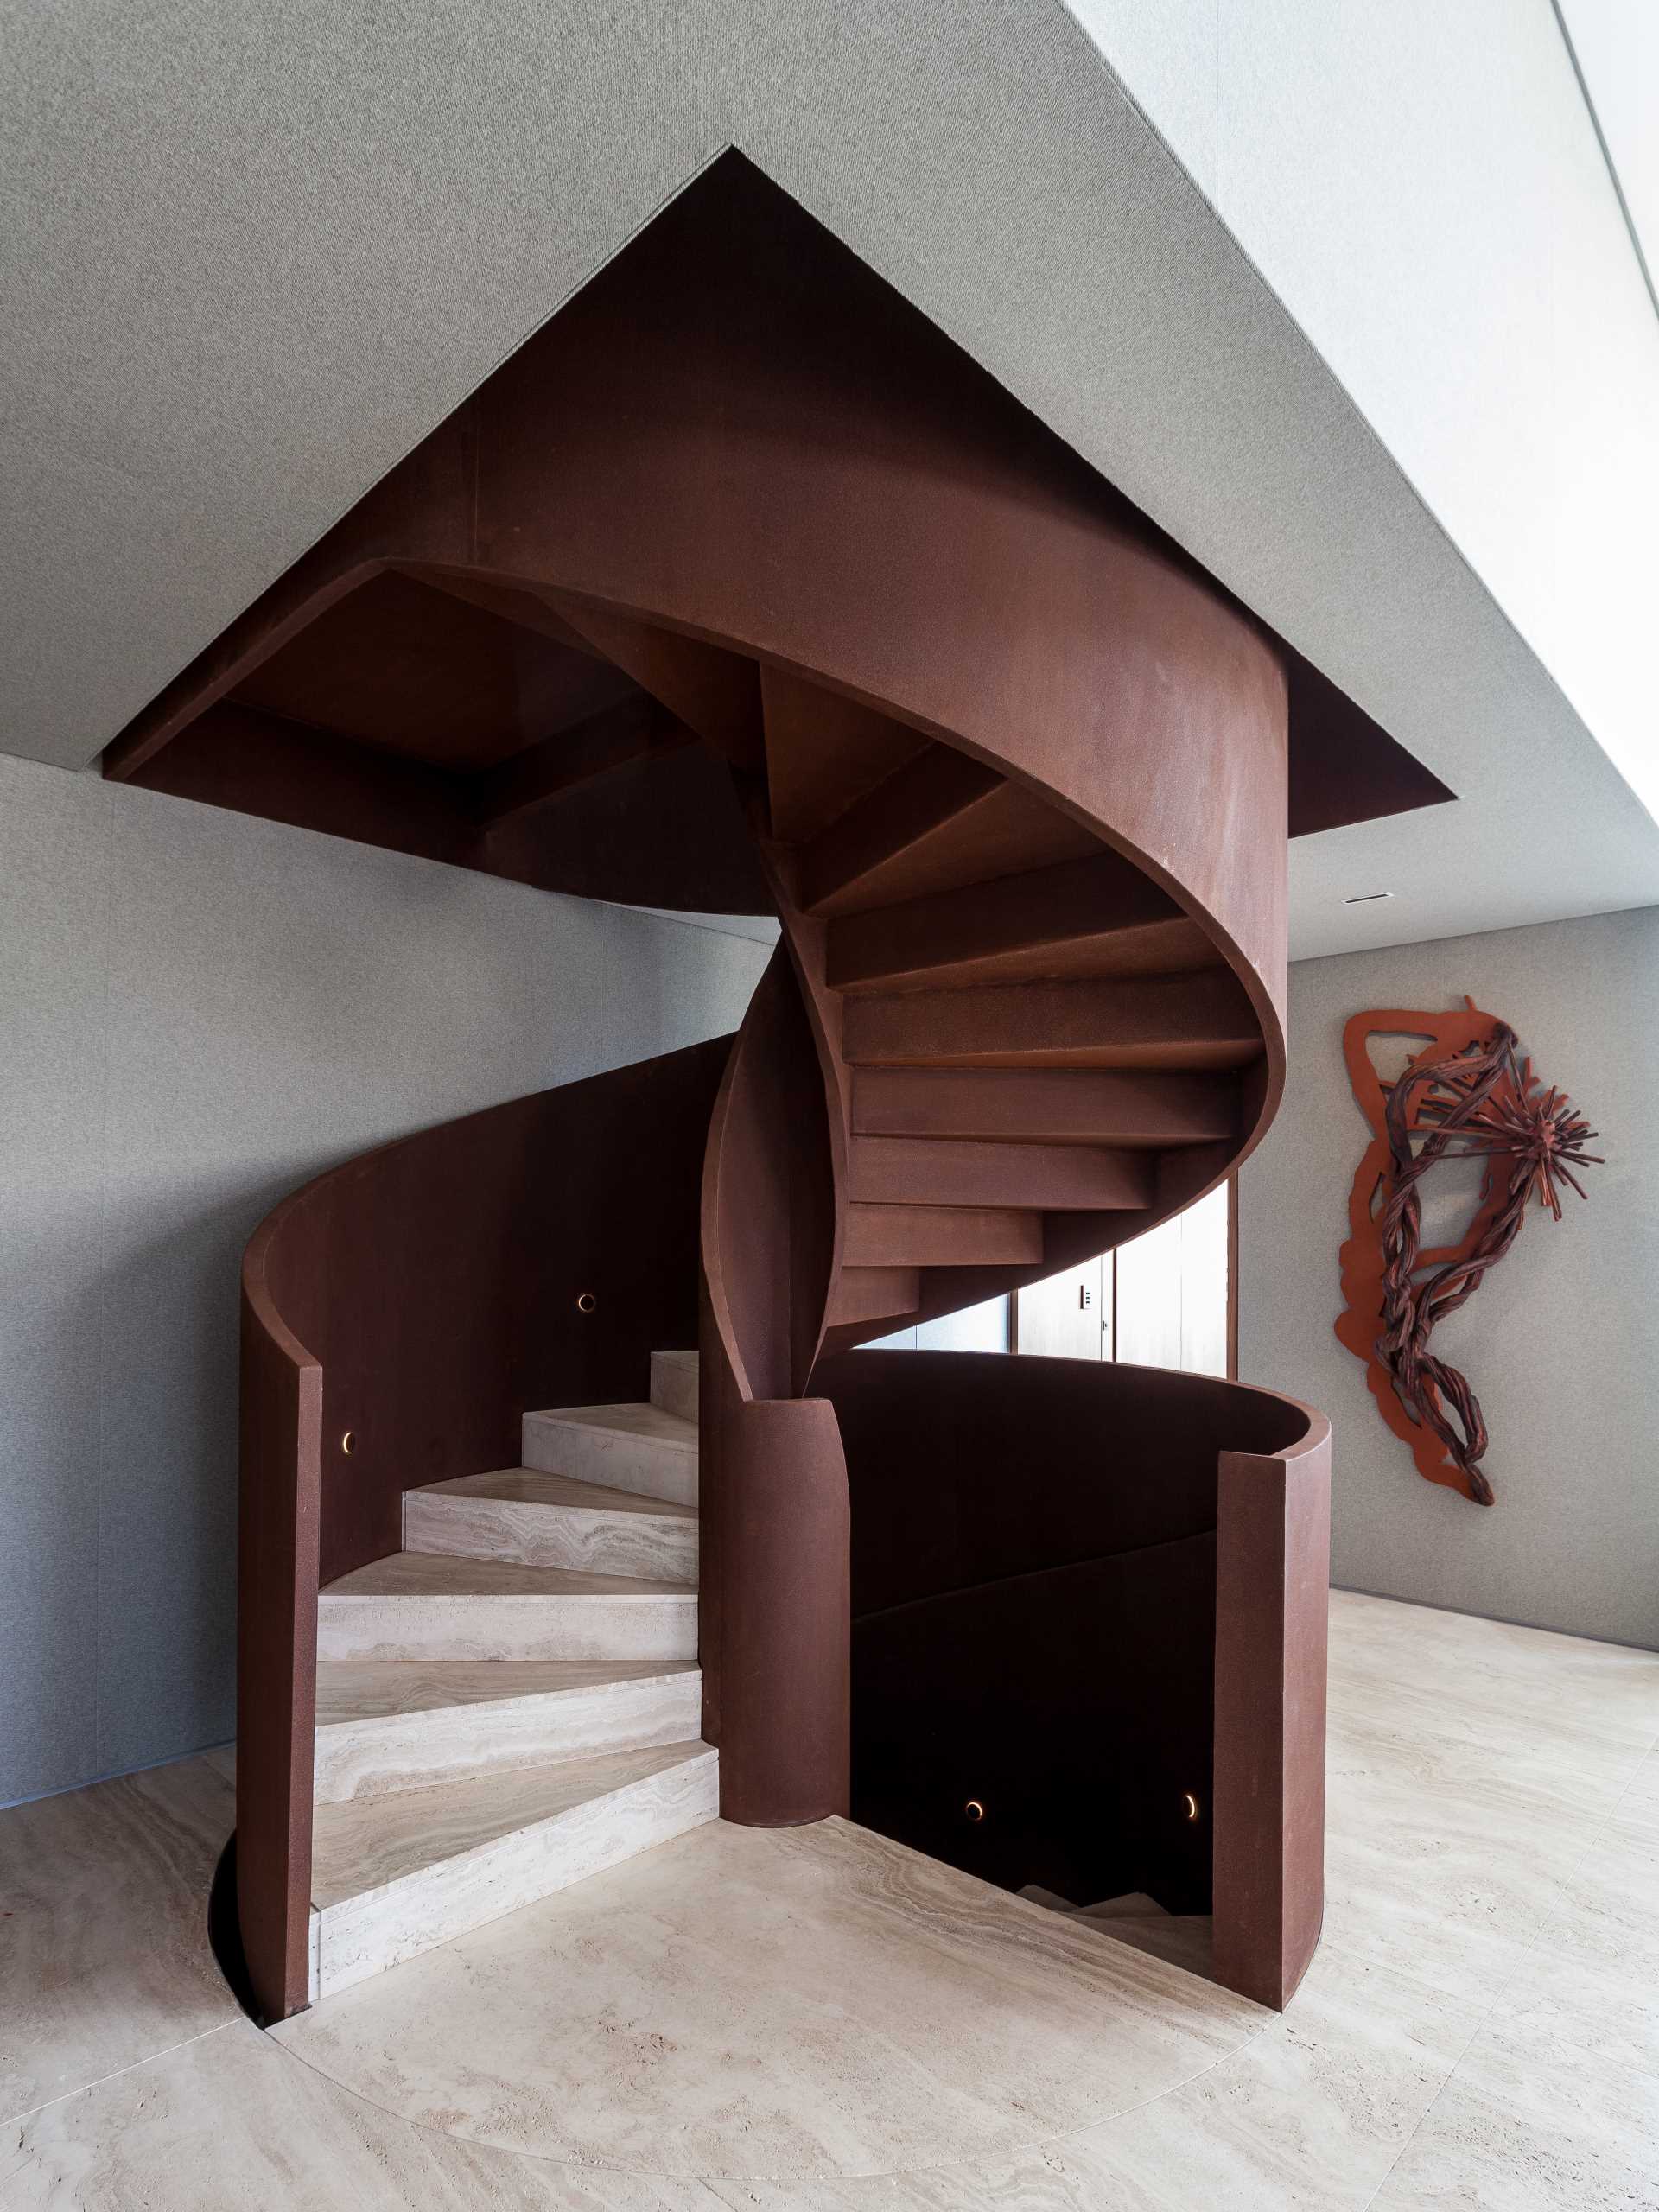 پلکان مارپیچ که به ،وان یک ،صر مجسمه سازی در فضای داخلی خودنمایی می کند، از فولاد کورتن ساخته شده است.